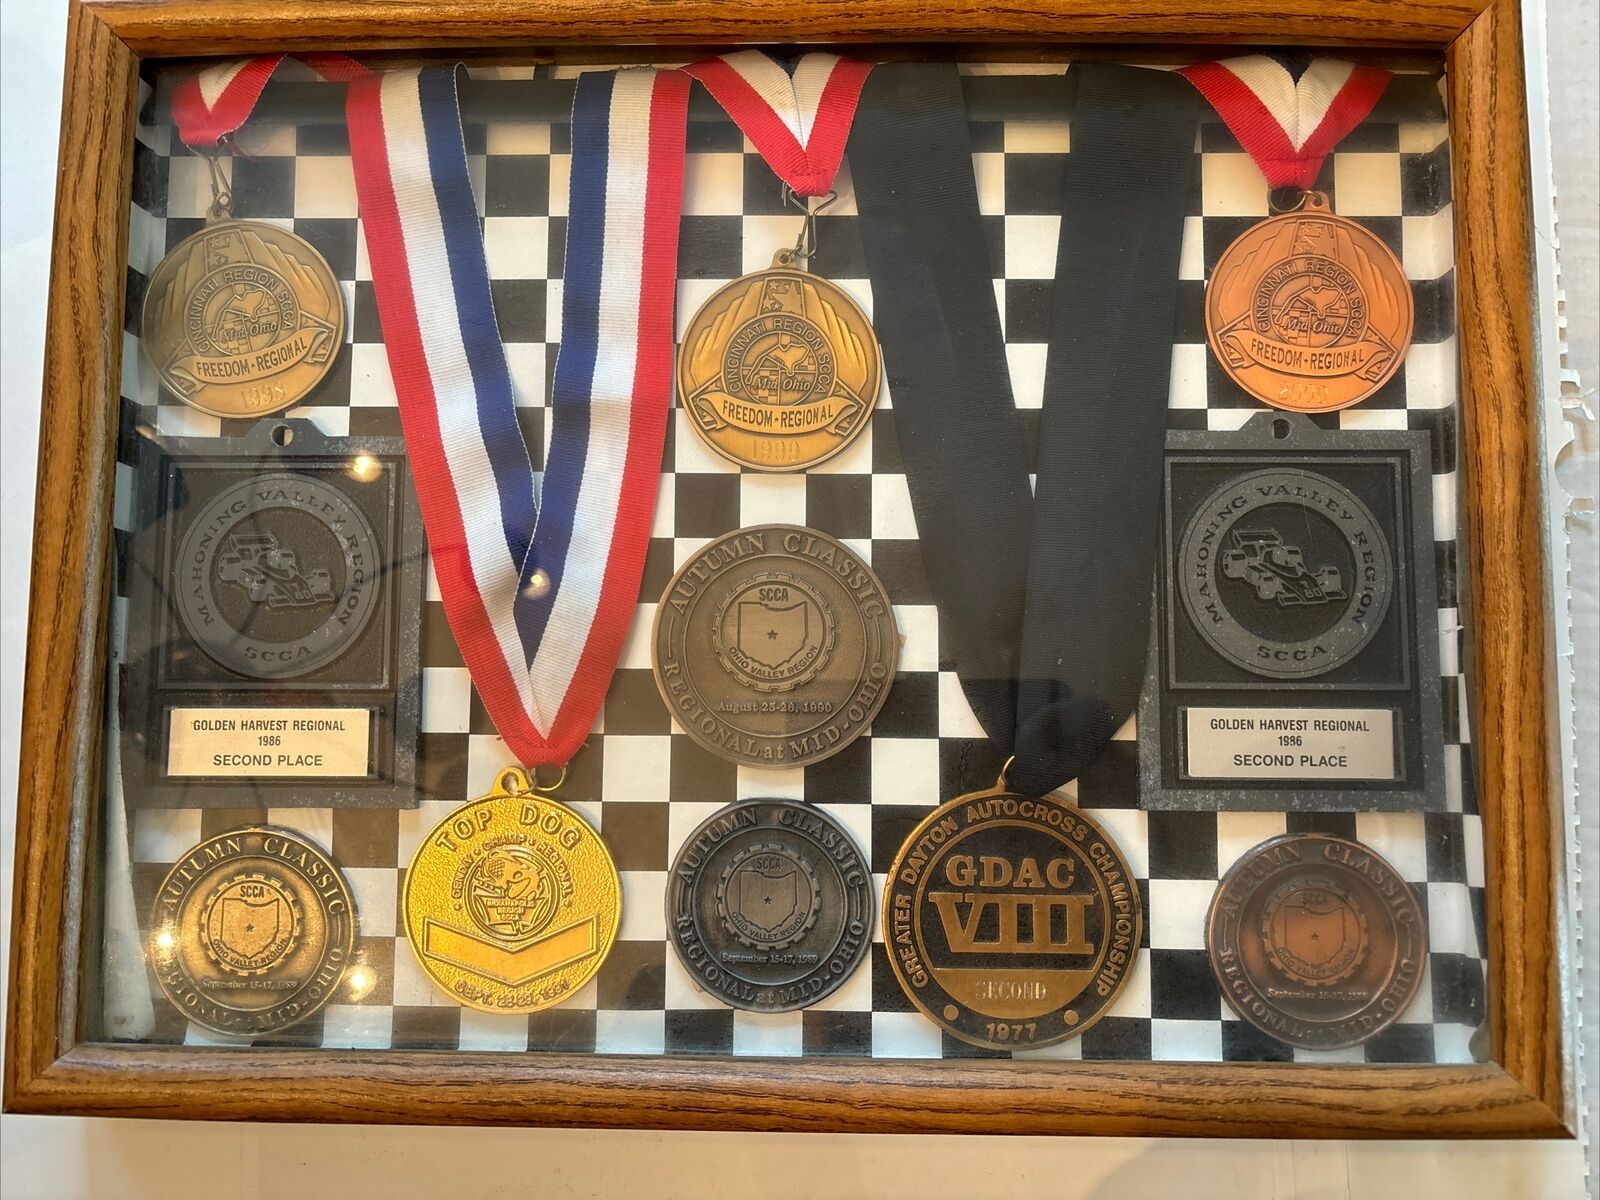 Rare Cincinnati SCCA racing awards vintage